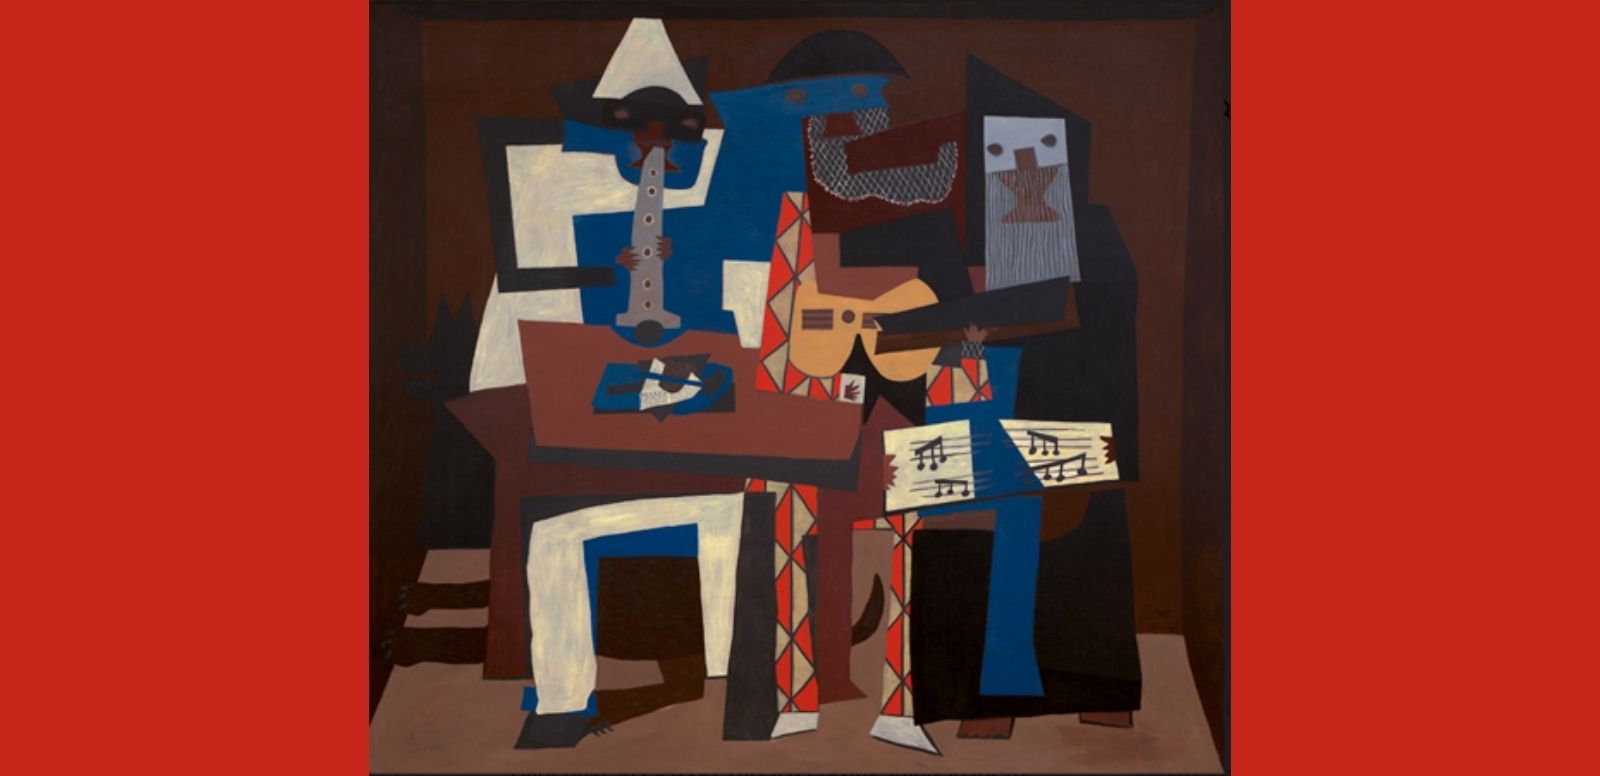 Pablo Picasso, “Los tres músicos”, 1921